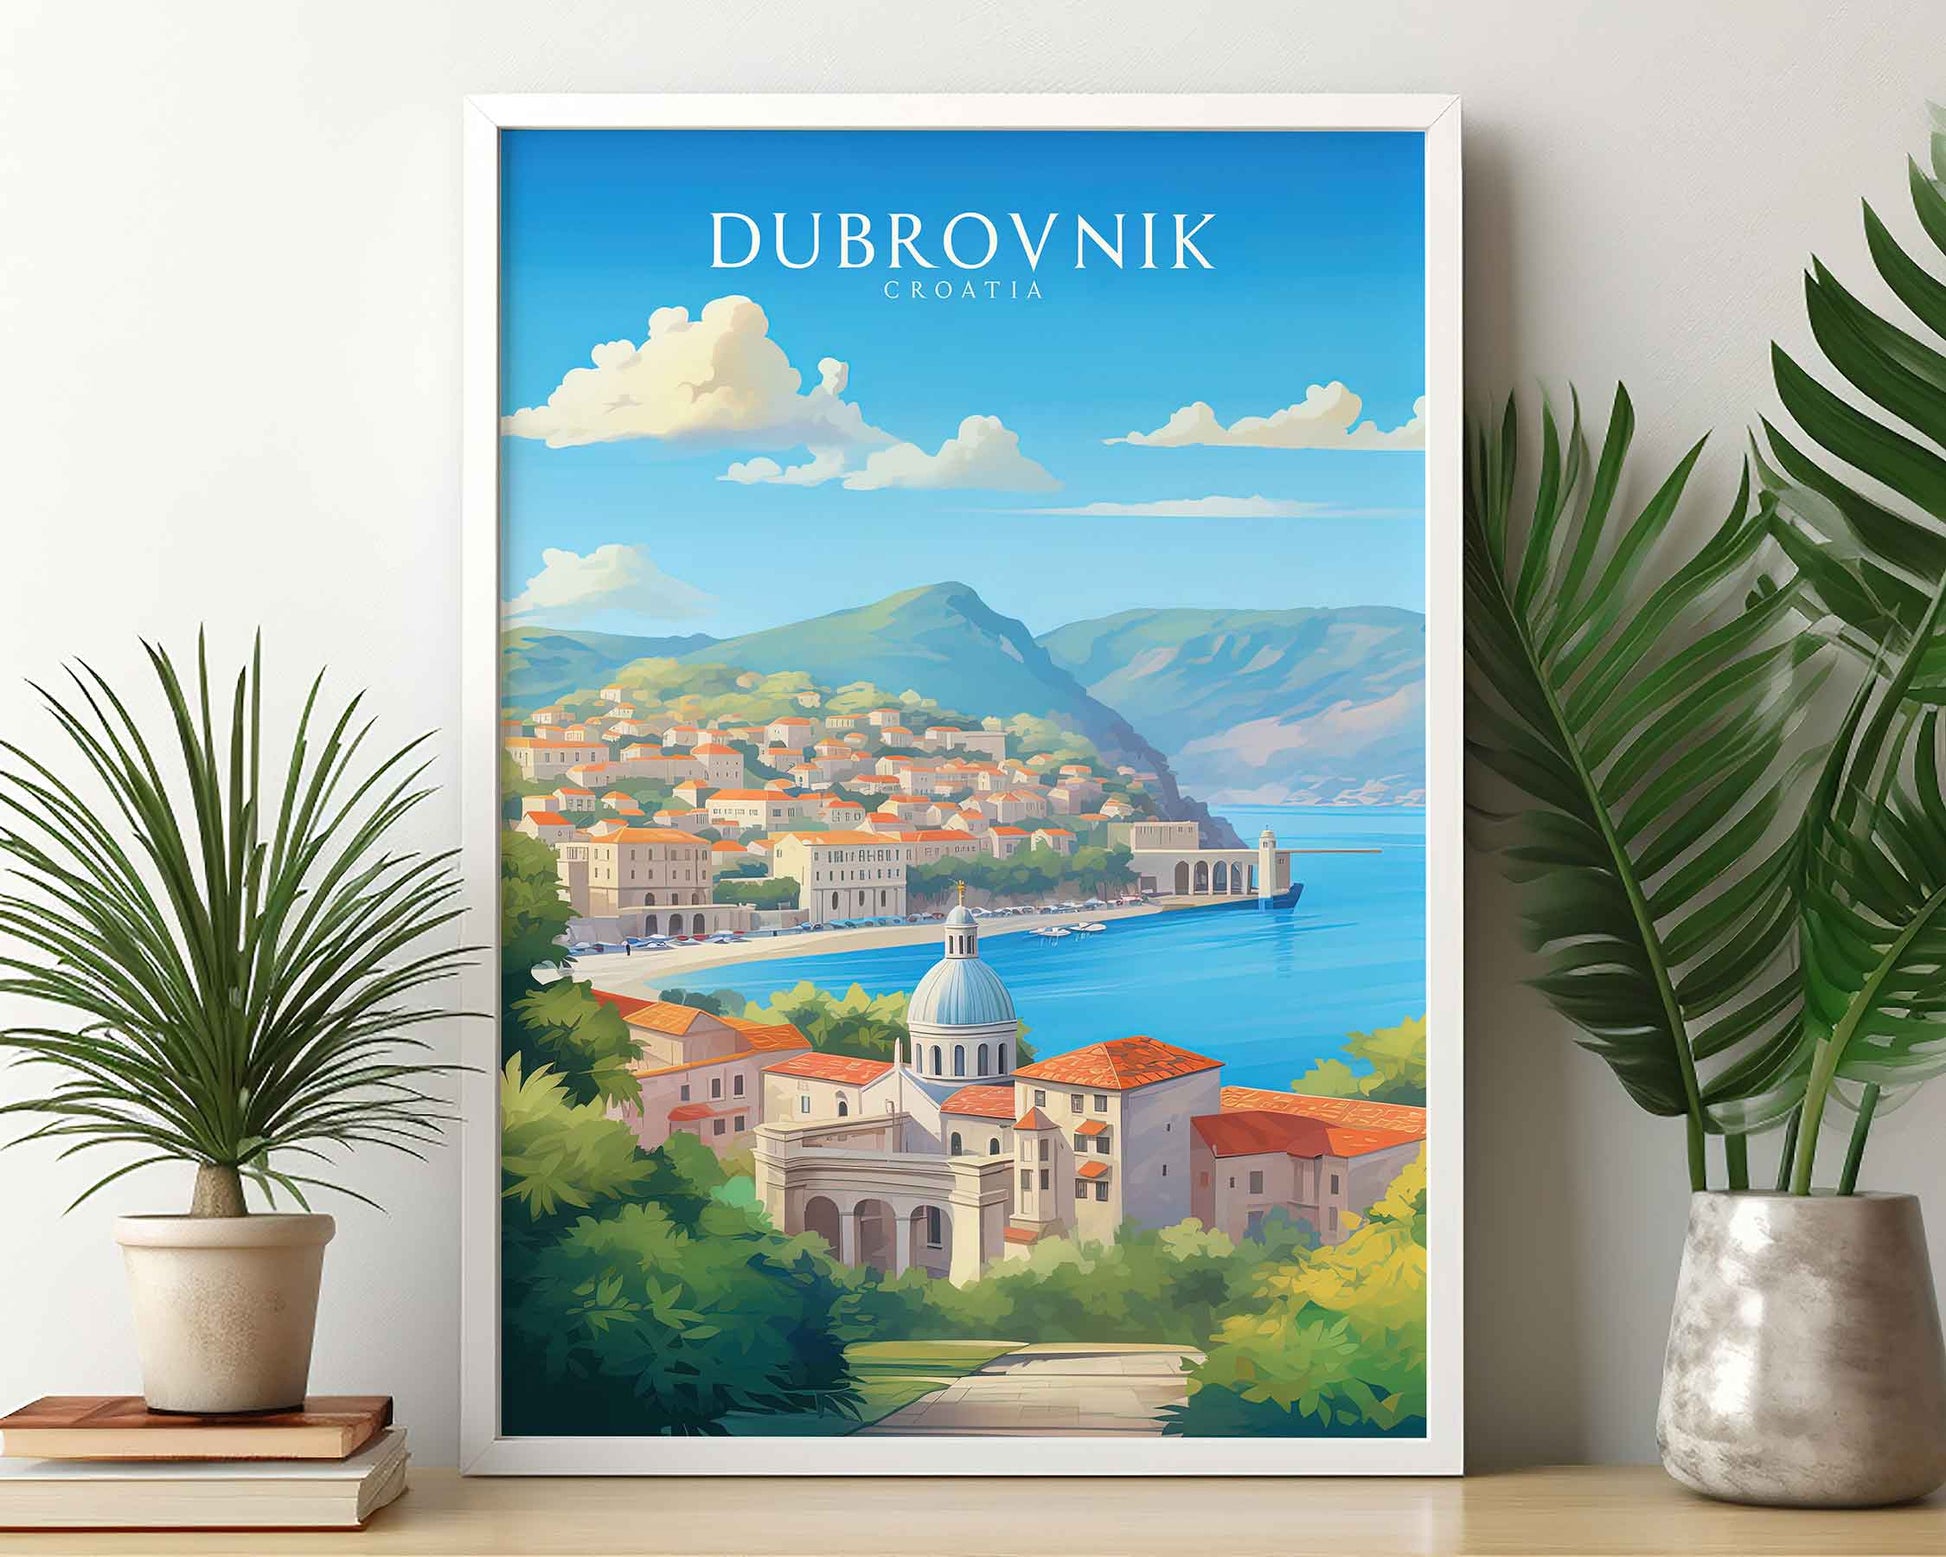 Framed Image of Dubrovnik Croatia Travel Poster Prints Wall Art Illustration